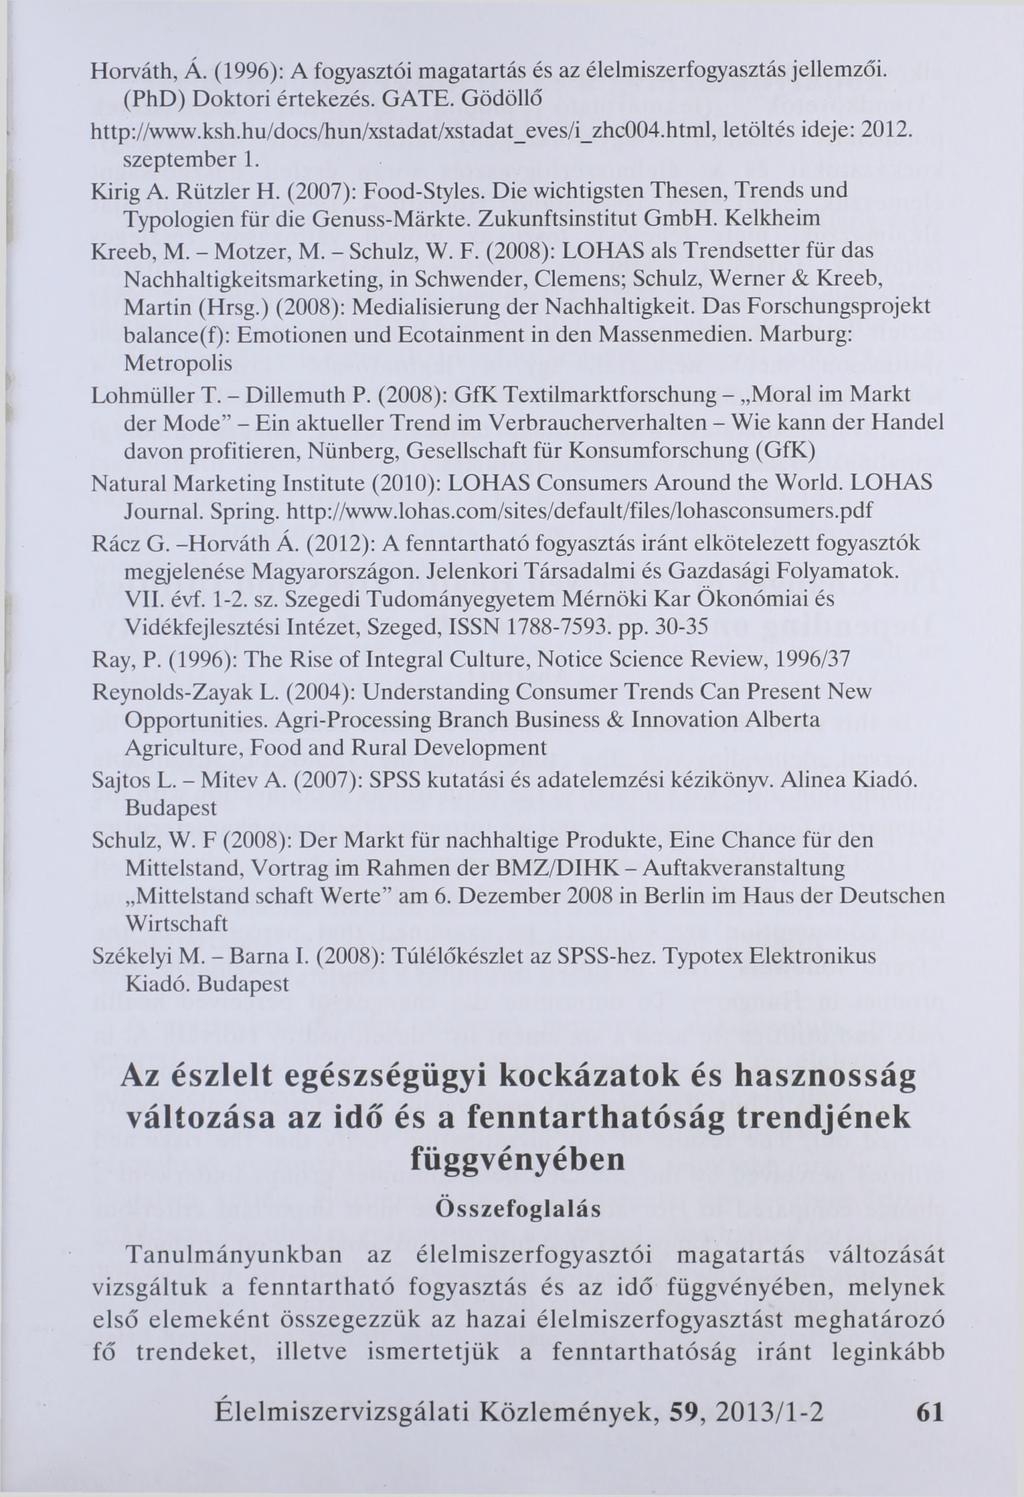 Horváth, Á. (1996): A fogyasztói magatartás és az élelmiszerfogyasztás jellemzői. (PhD) Doktori értekezés. GATE. Gödöllő http://www.ksh.hu/docs/hun/xstadat/xstadat_eves/i_zhc004.